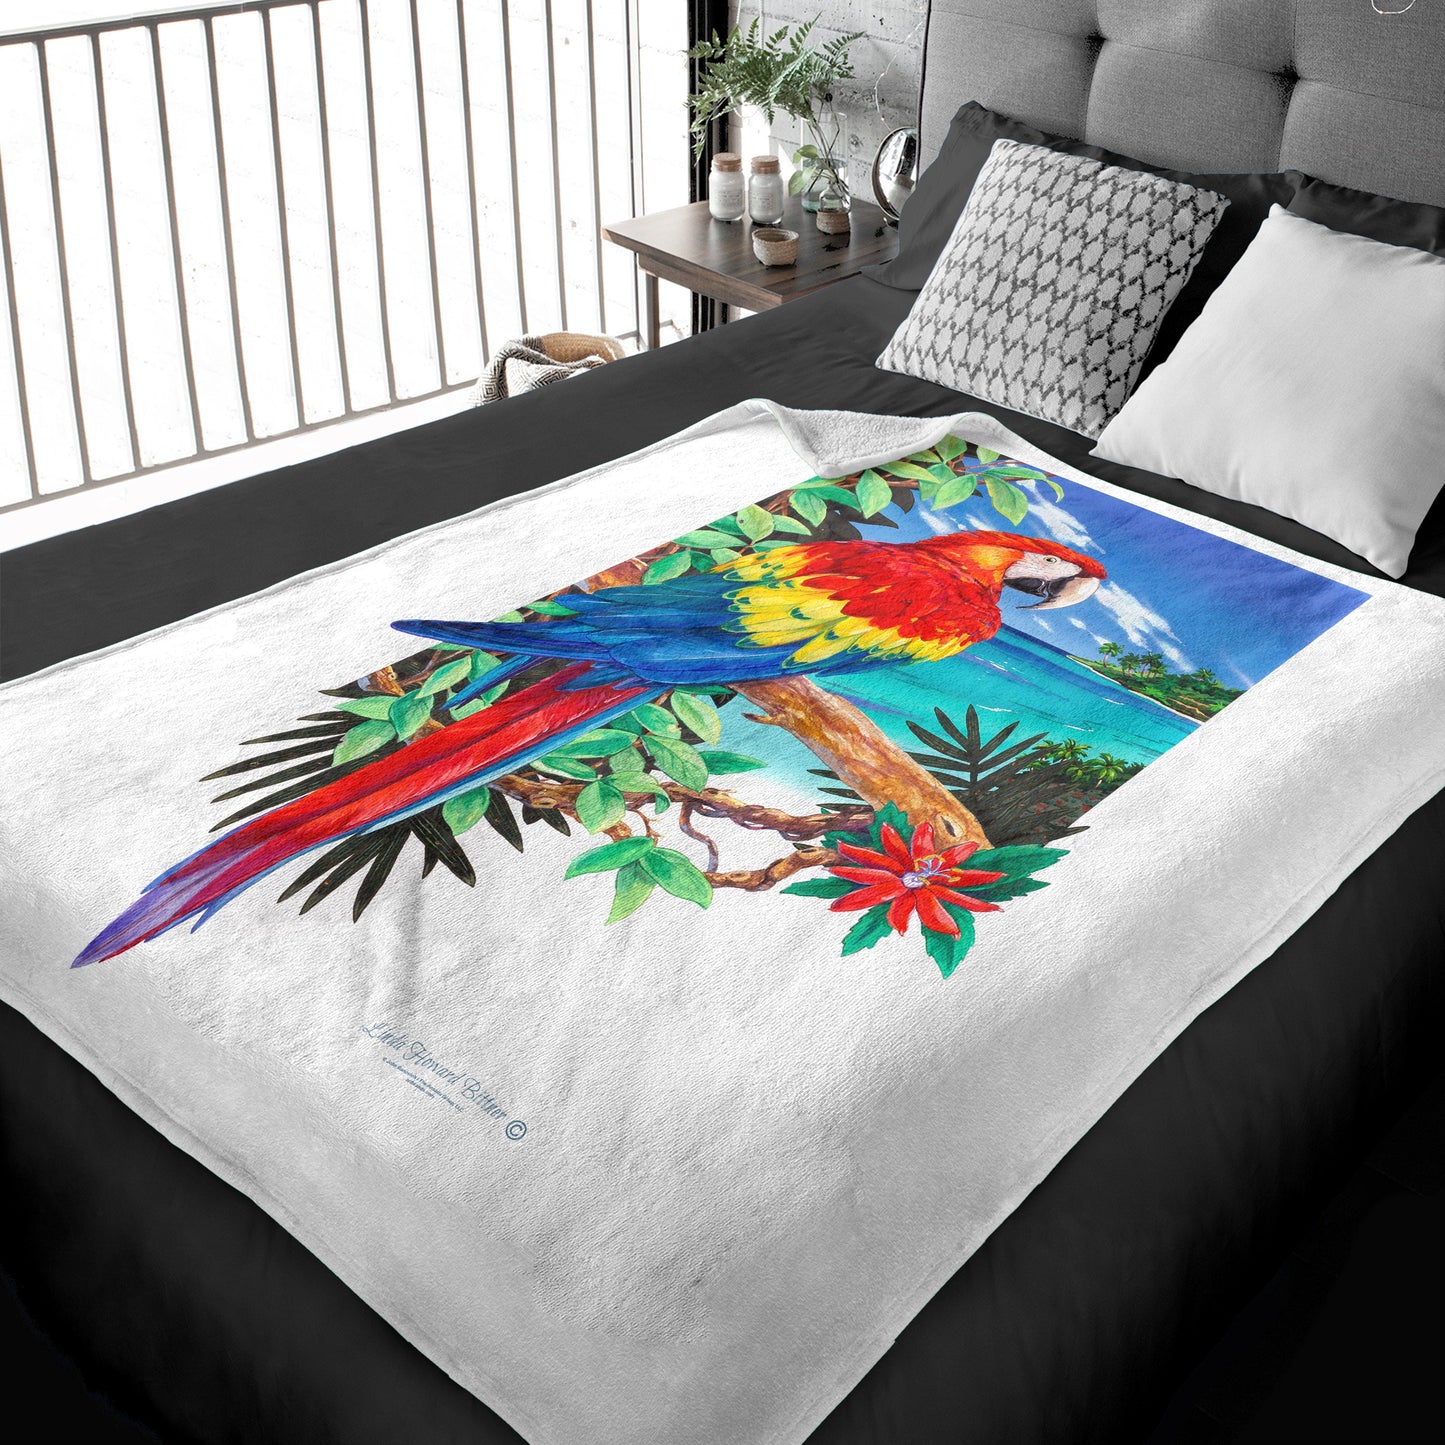 50" x 60" Scarlet Macaw Plush Minky Blanket